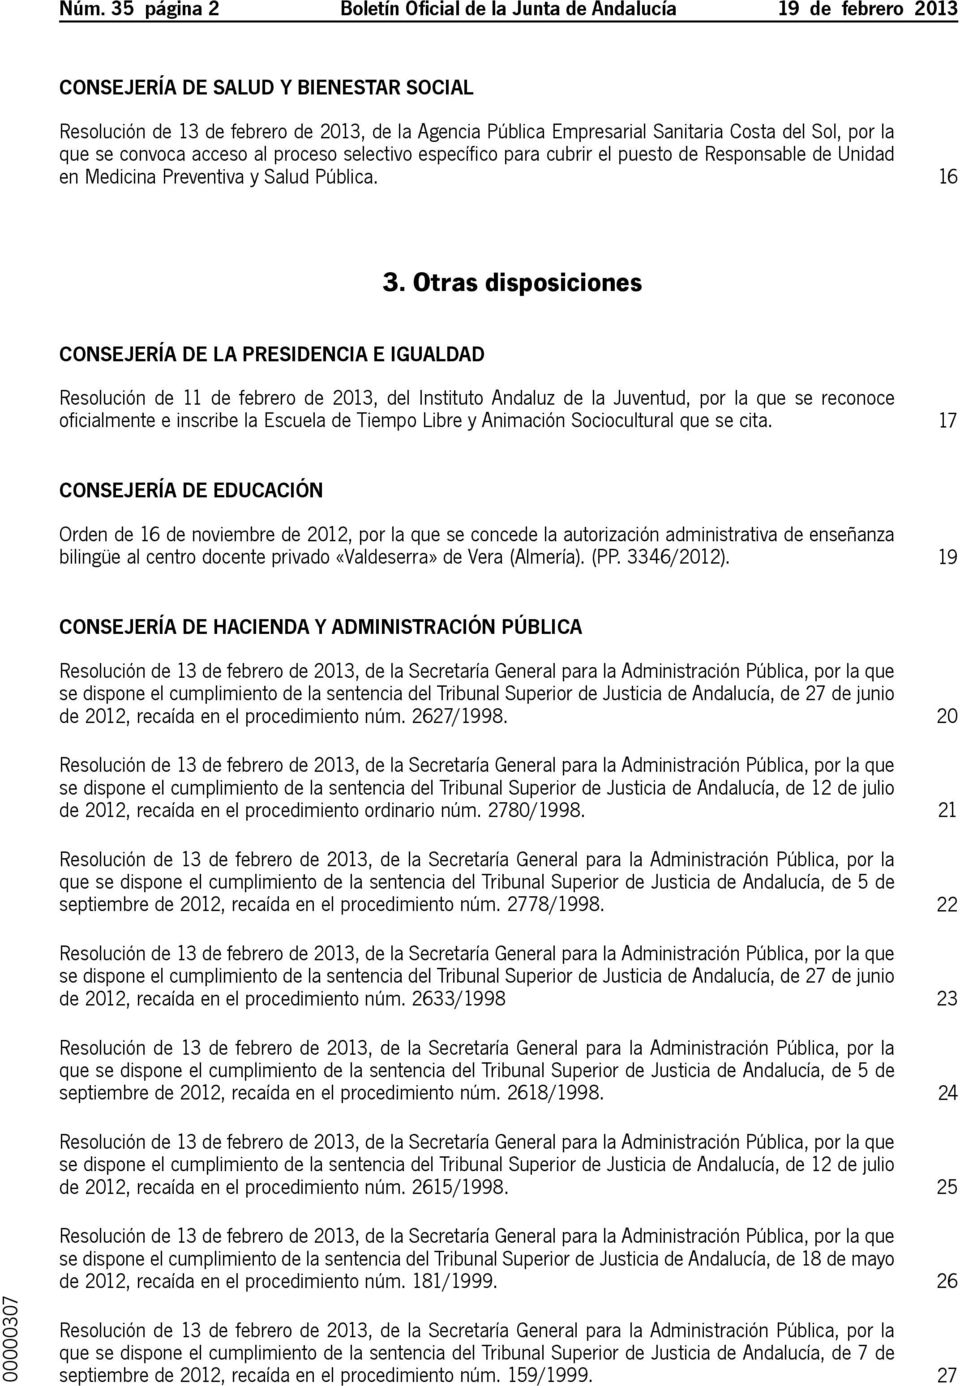 Otras disposiciones Consejería de La Presidencia e Igualdad Resolución de 11 de febrero de 2013, del Instituto Andaluz de la Juventud, por la que se reconoce oficialmente e inscribe la Escuela de